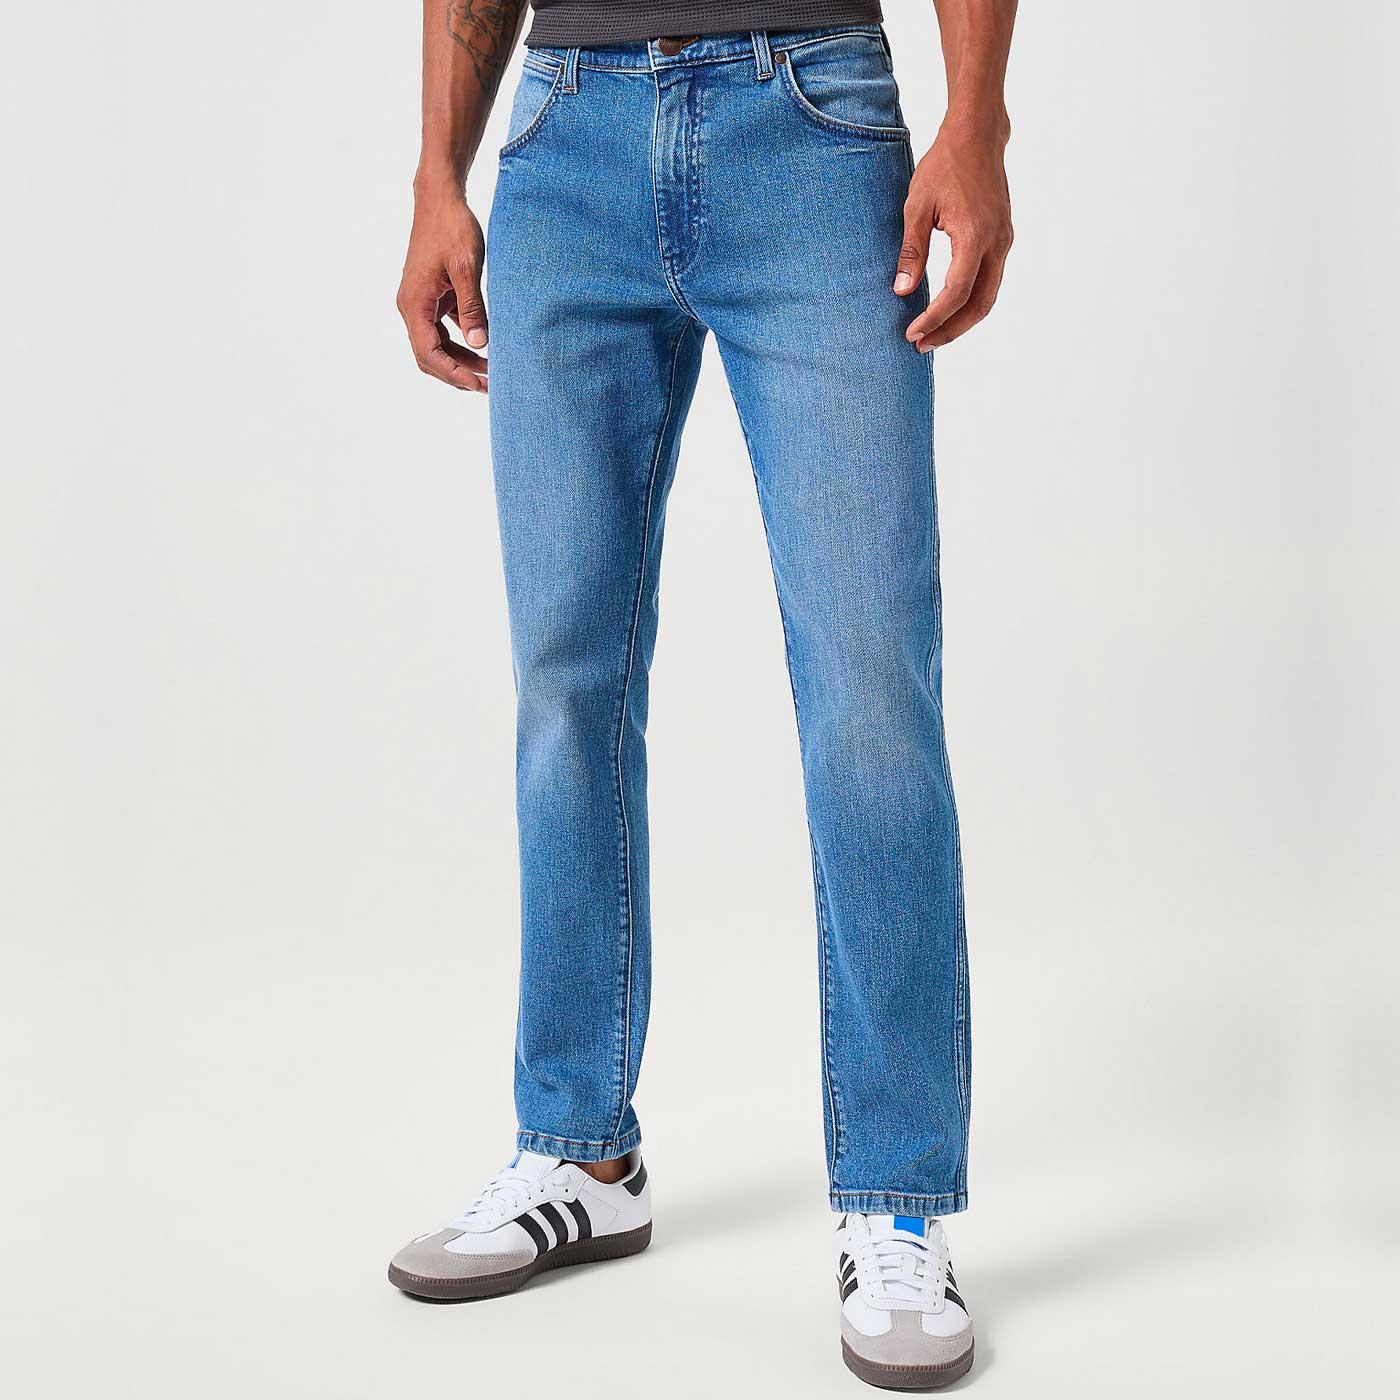 Larston Wrangler Slim Taper Retro Denim Jeans G